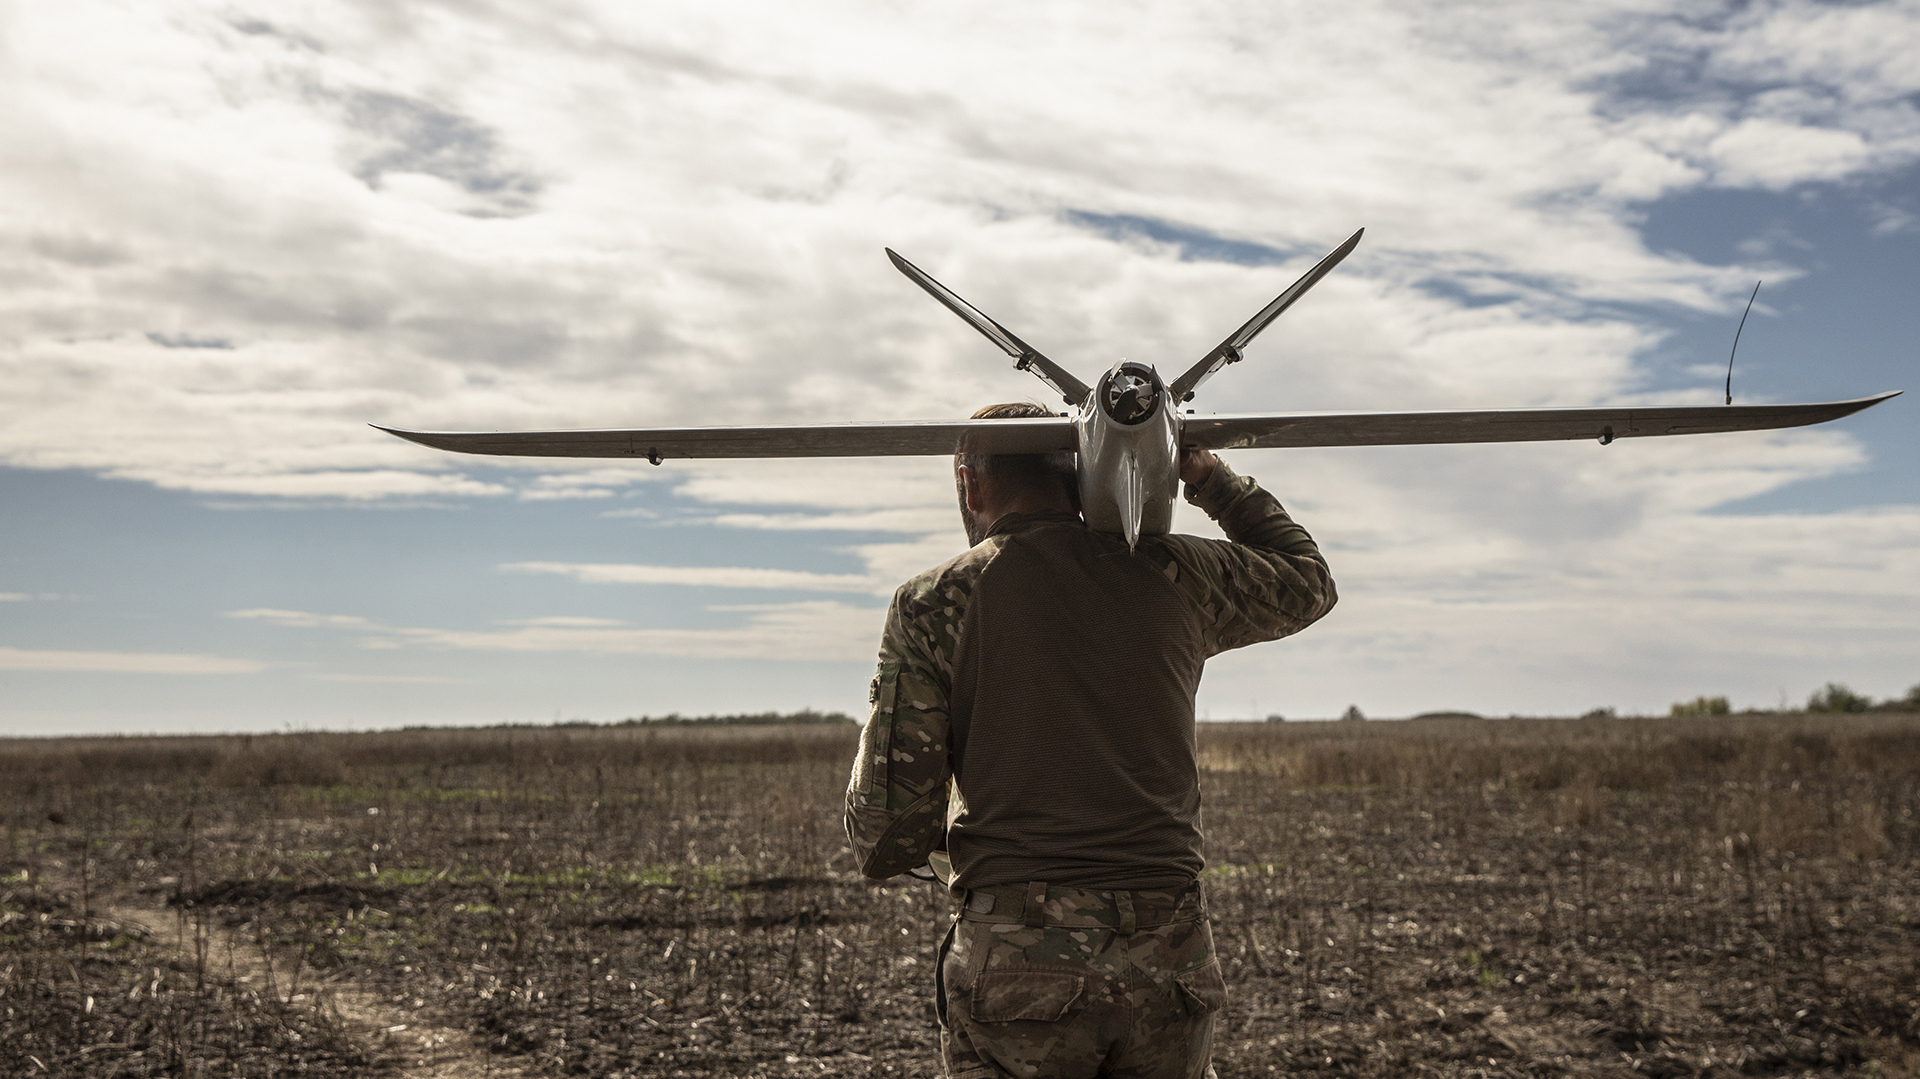 Un soldado ucraniano que se hace llamar "Viter" lleva un dron Leleka-100 a punto de ser lanzado, y navega cuidadosamente por un campo el jueves en la región de Kherson, Ucrania, sembrado de minas rusas. (Foto para The Washington Post por Heidi Levine)